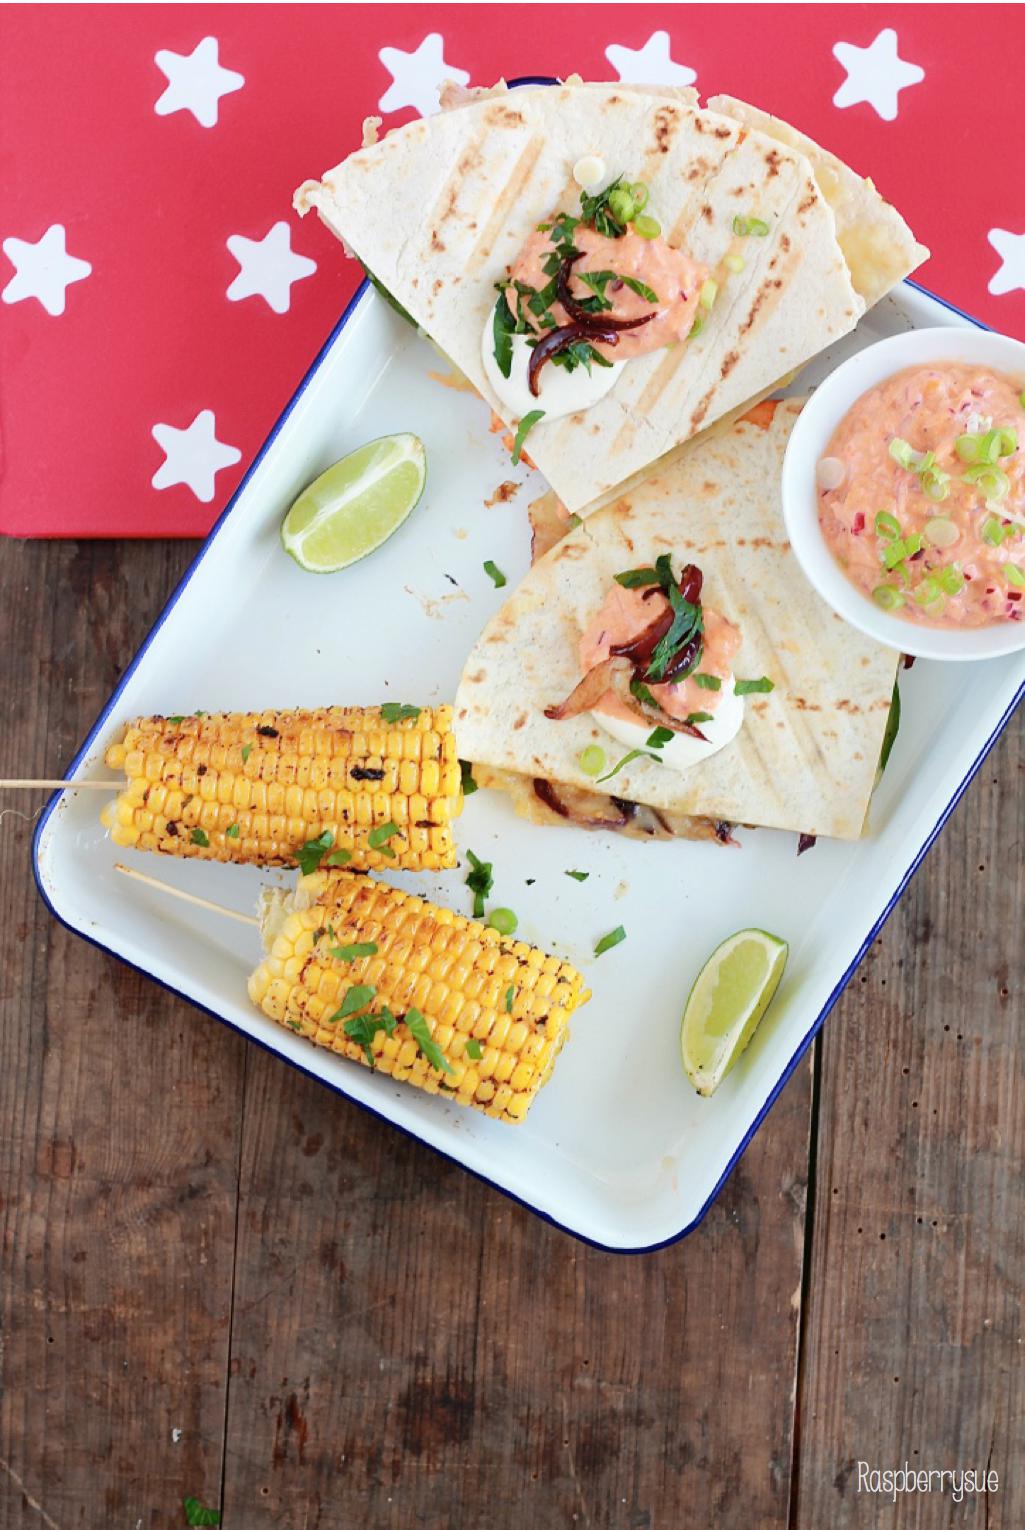 Grilled Corn und Club Quesadillas von Carina vom Blog Rasberrysue 